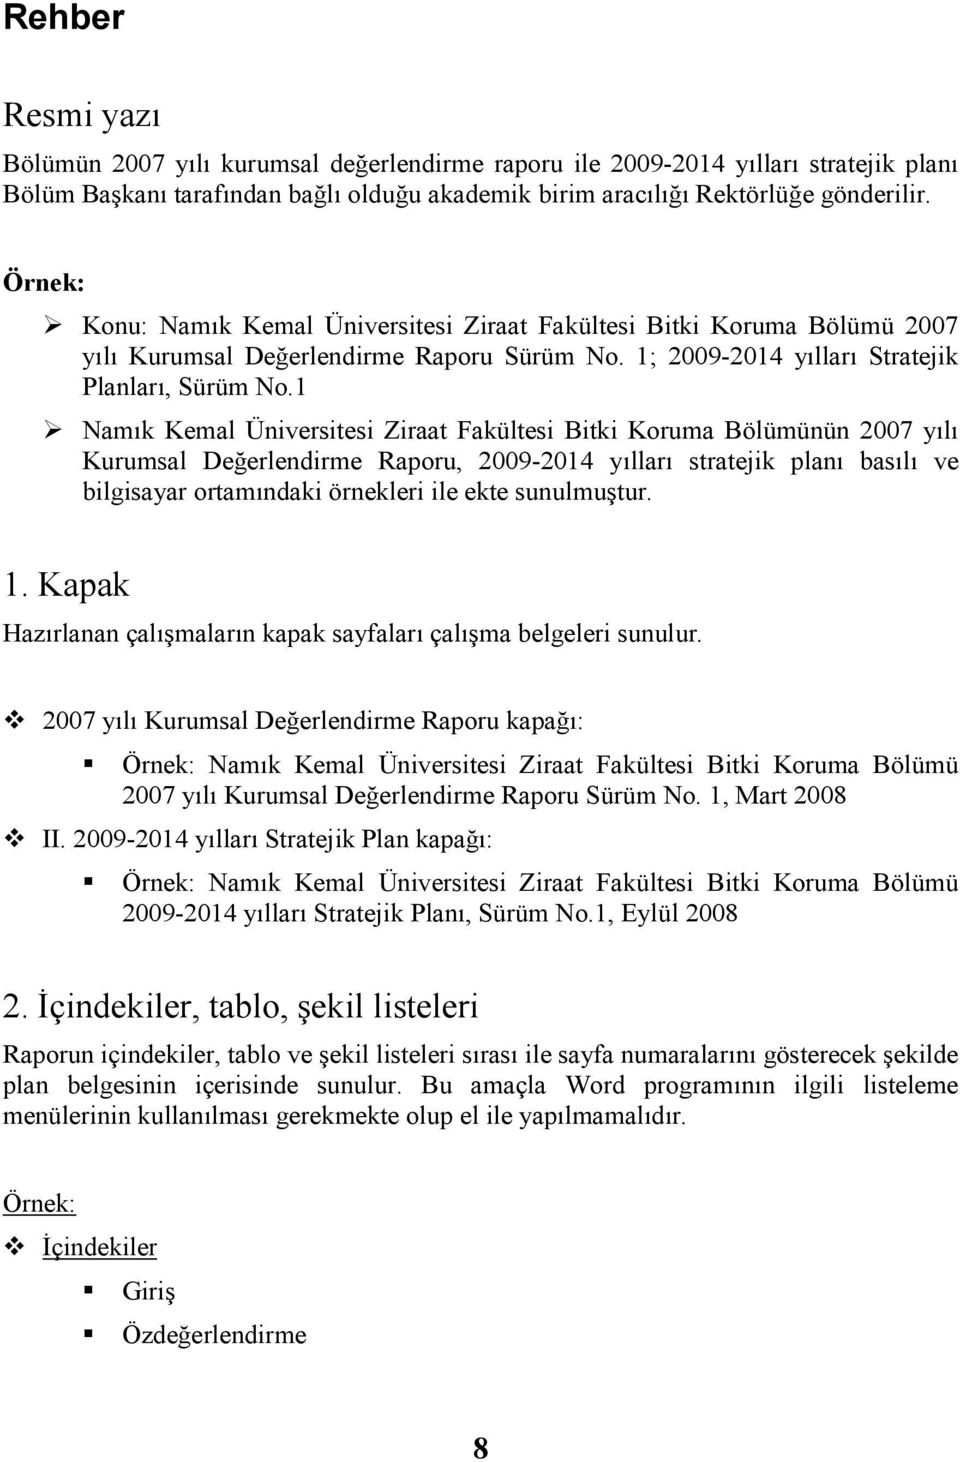 1 Namık Kemal Üniversitesi Ziraat Fakültesi Bitki Koruma Bölümünün 2007 yılı Kurumsal Değerlendirme Raporu, 2009-2014 yılları stratejik planı basılı ve bilgisayar ortamındaki örnekleri ile ekte